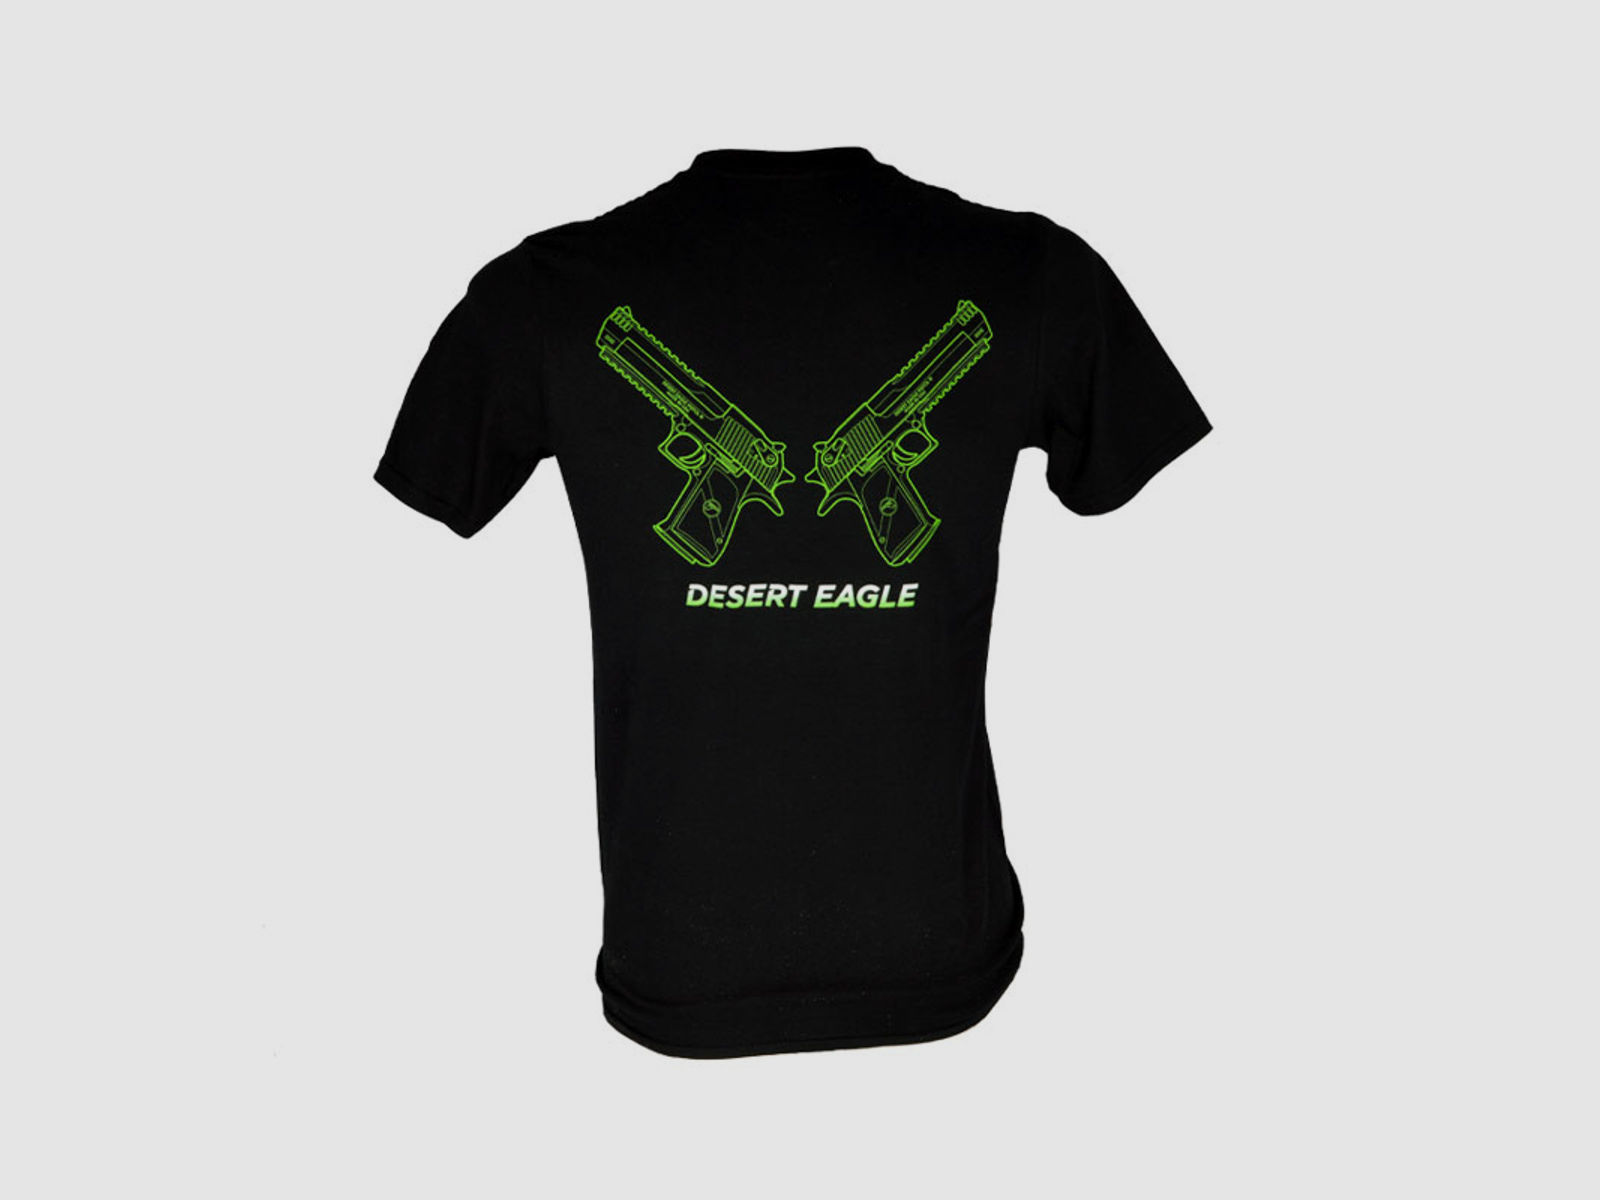 Ferkinghoff T-Shirt Desert Eagle Large Neon